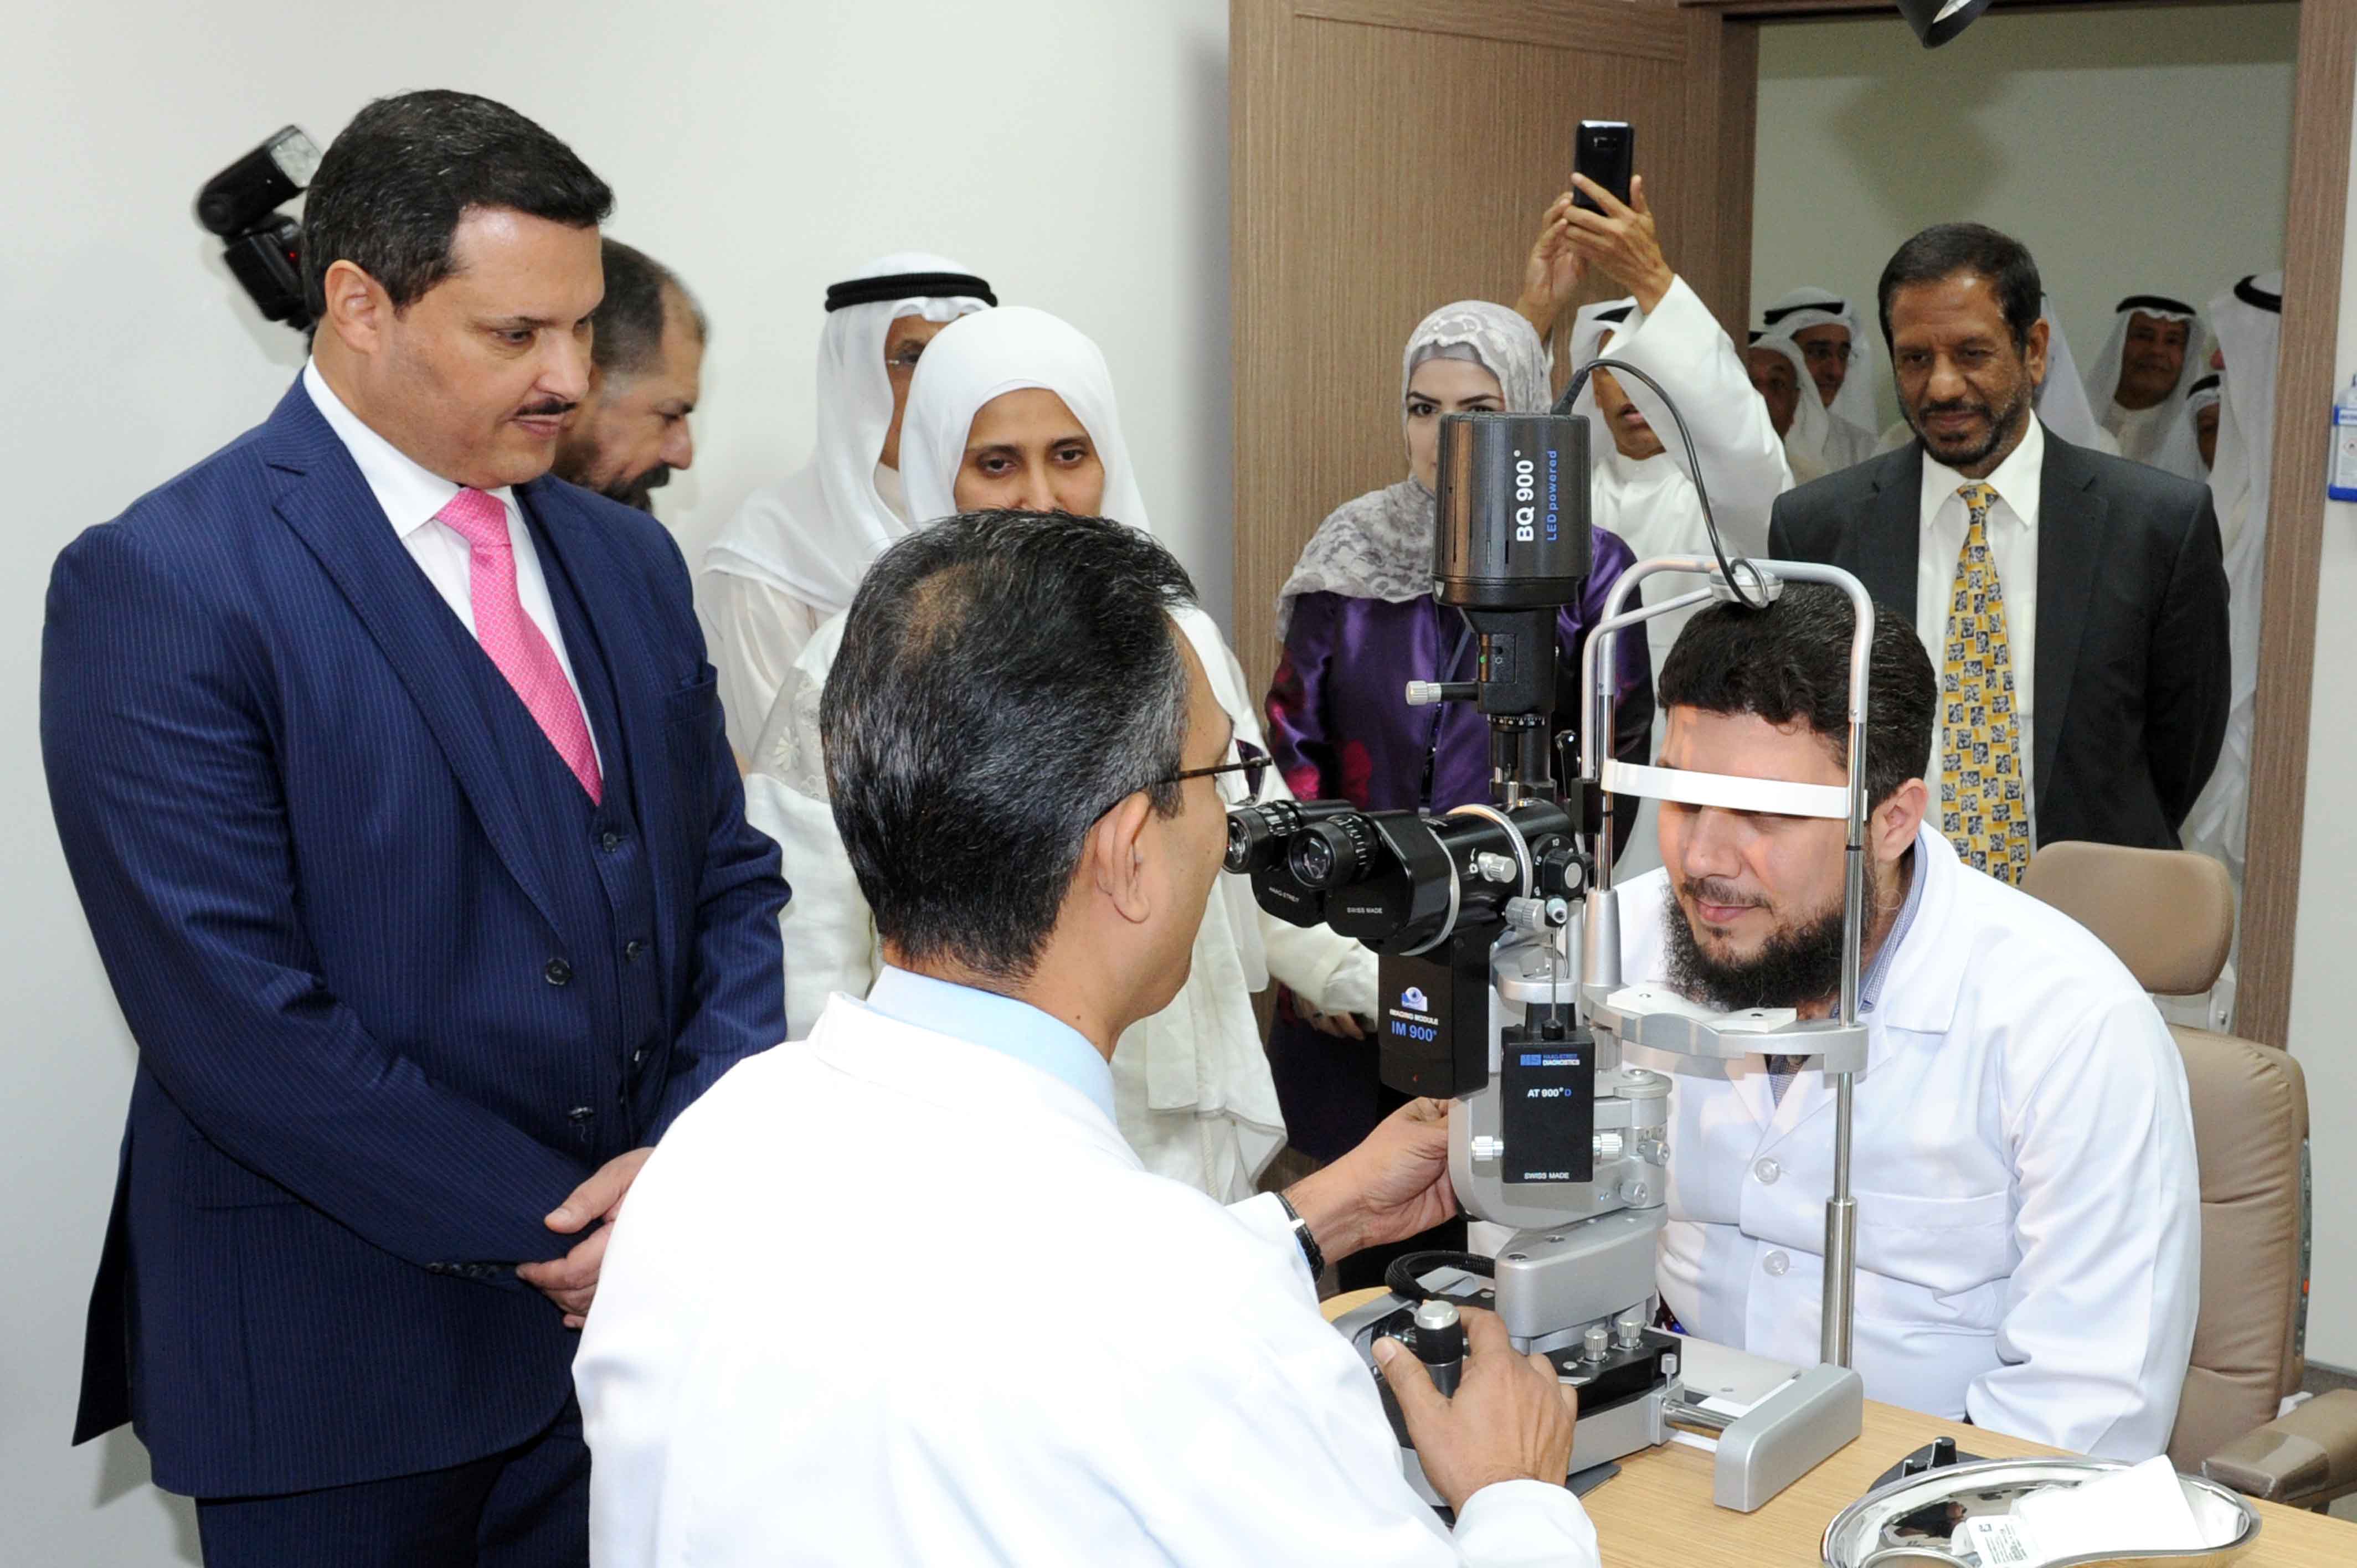 افتتاح مركز (محمد علي محمد الدخان) التخصصي للعيون بمنطقة الشامية التابعة لمنطقة العاصمة الصحية